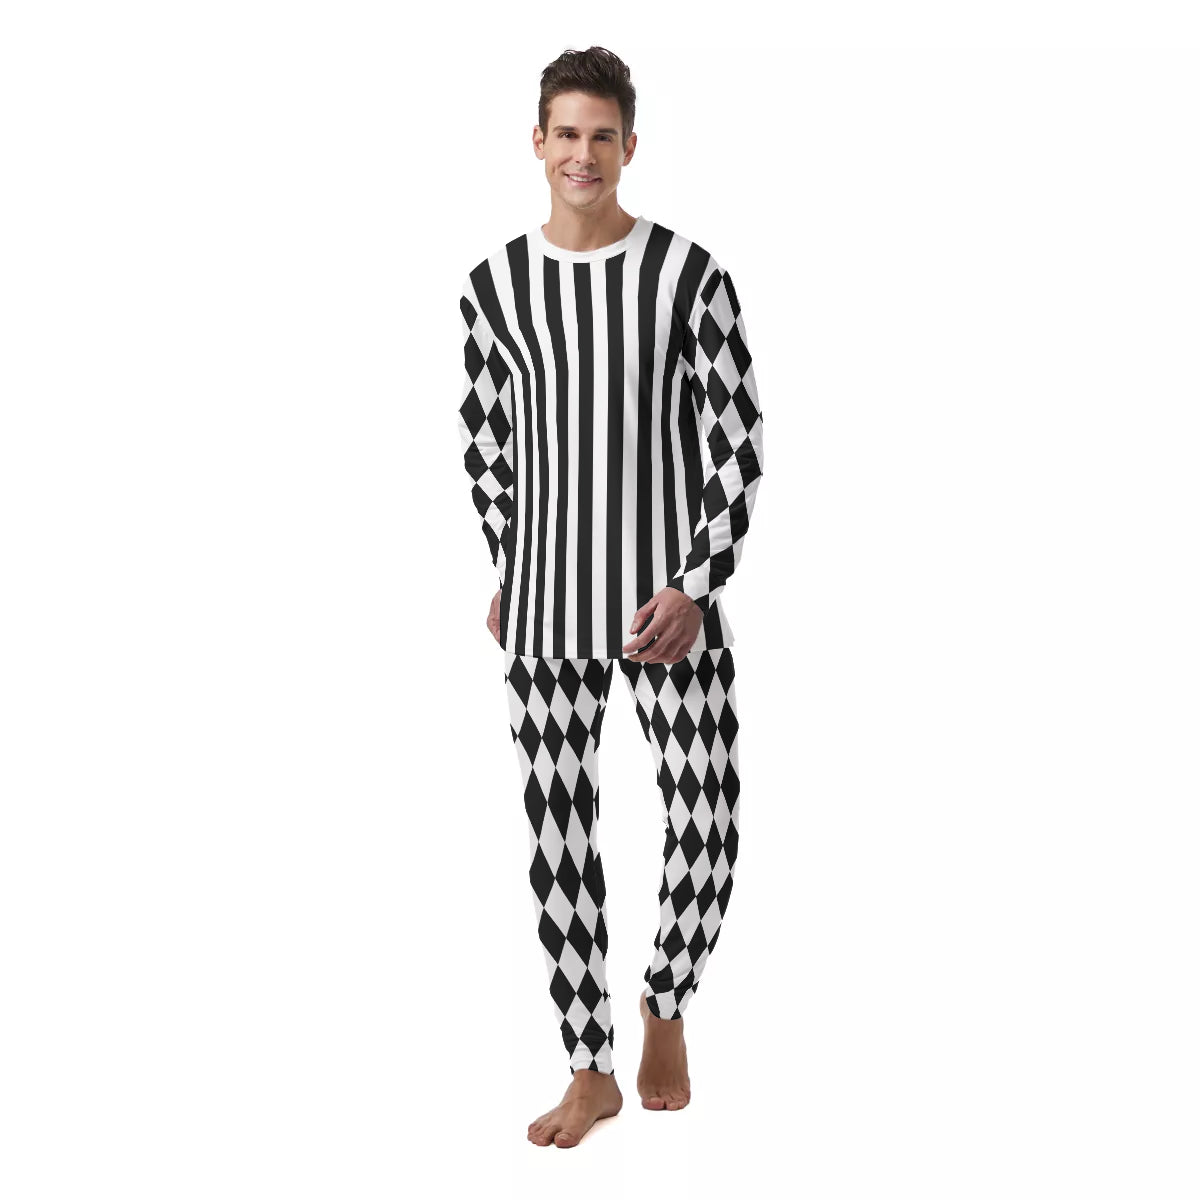 Black & White Check Striped Men's PJ Set